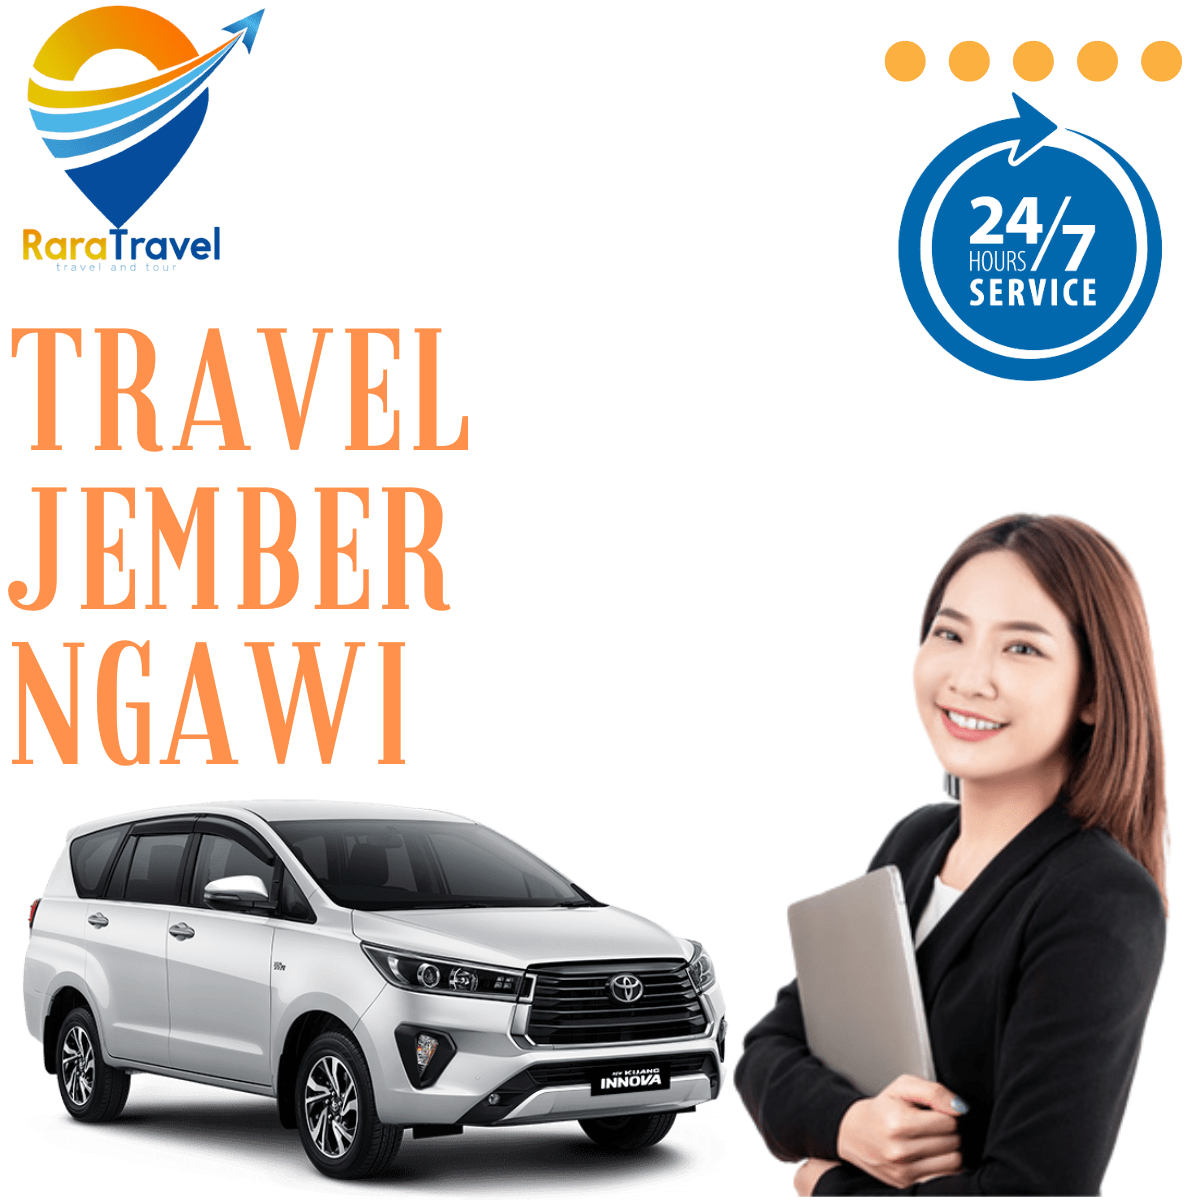 Travel Jember Ngawi Harga Tiket Murah - RaraTravel.id